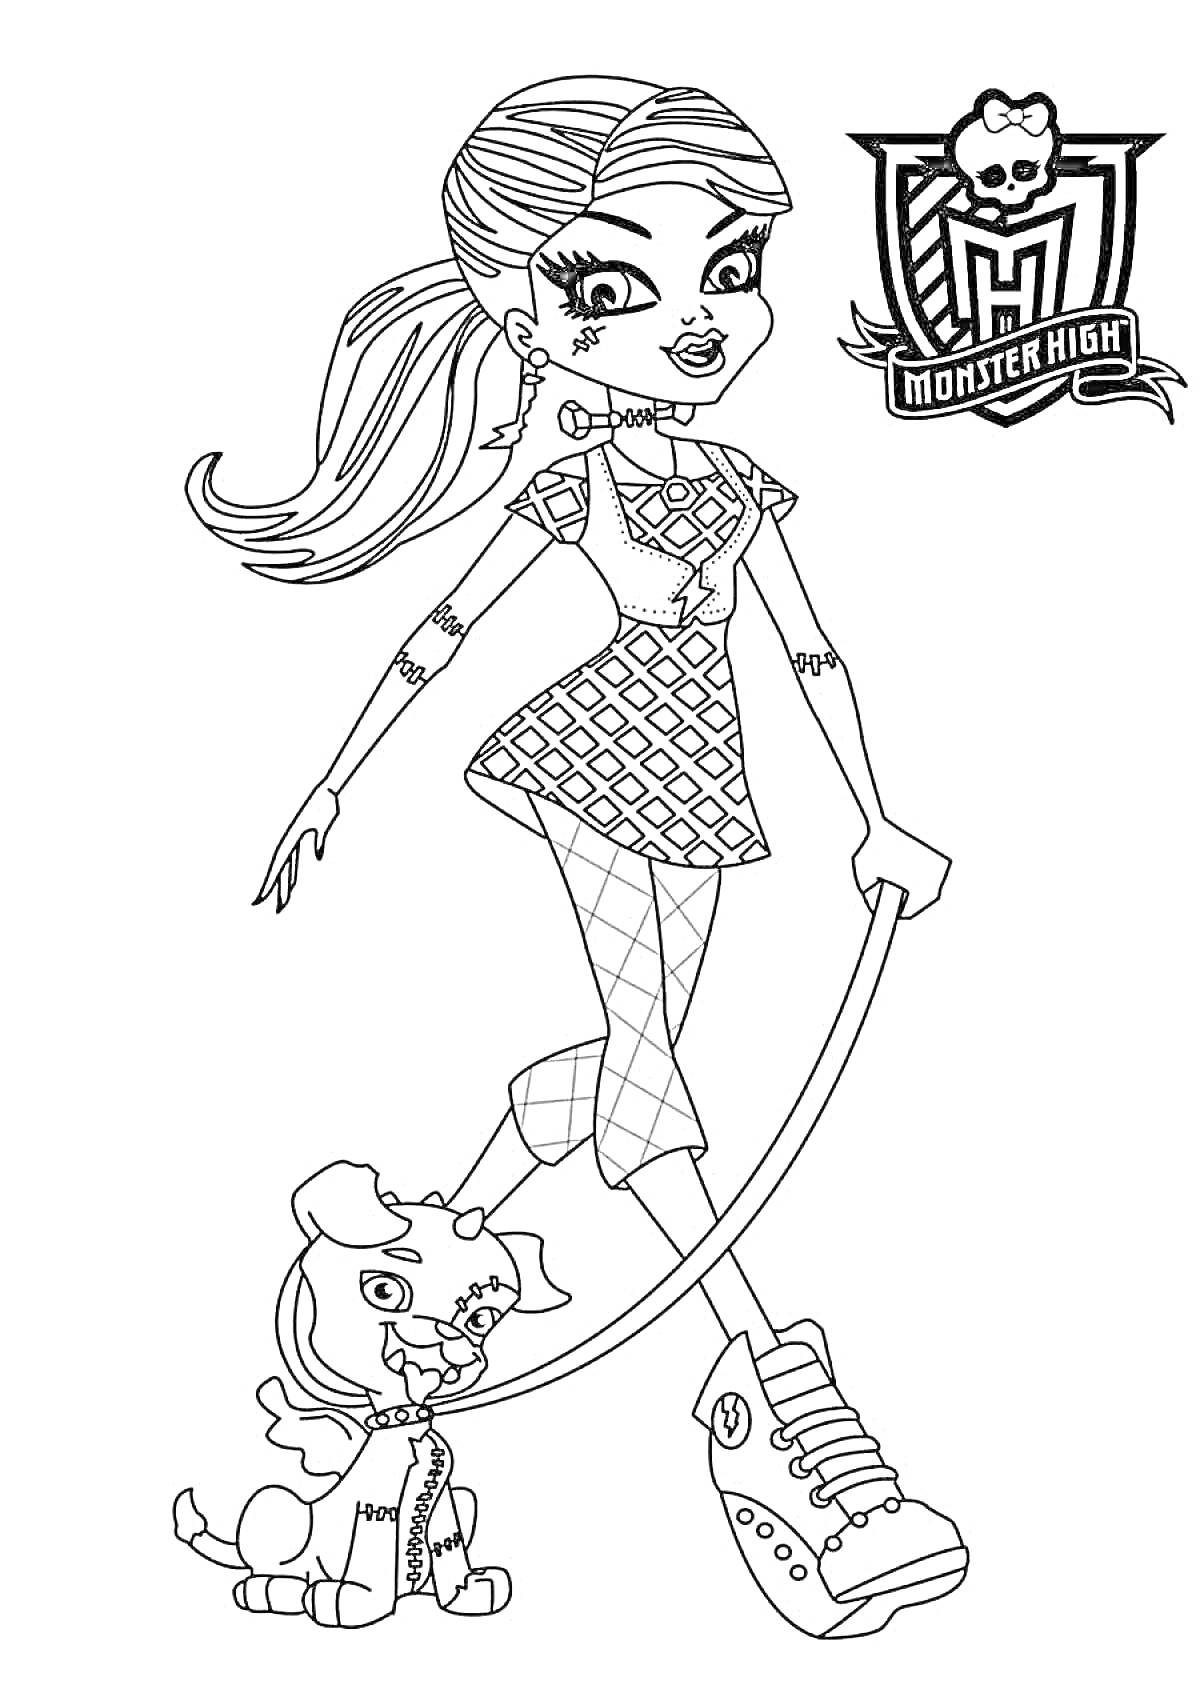 Раскраска Девочка-Монстр Хай с прической в хвосте, в платье с геометрическим узором и сетчатыми колготками, выгуливающая питомца на поводке, с логотипом Monster High в углу